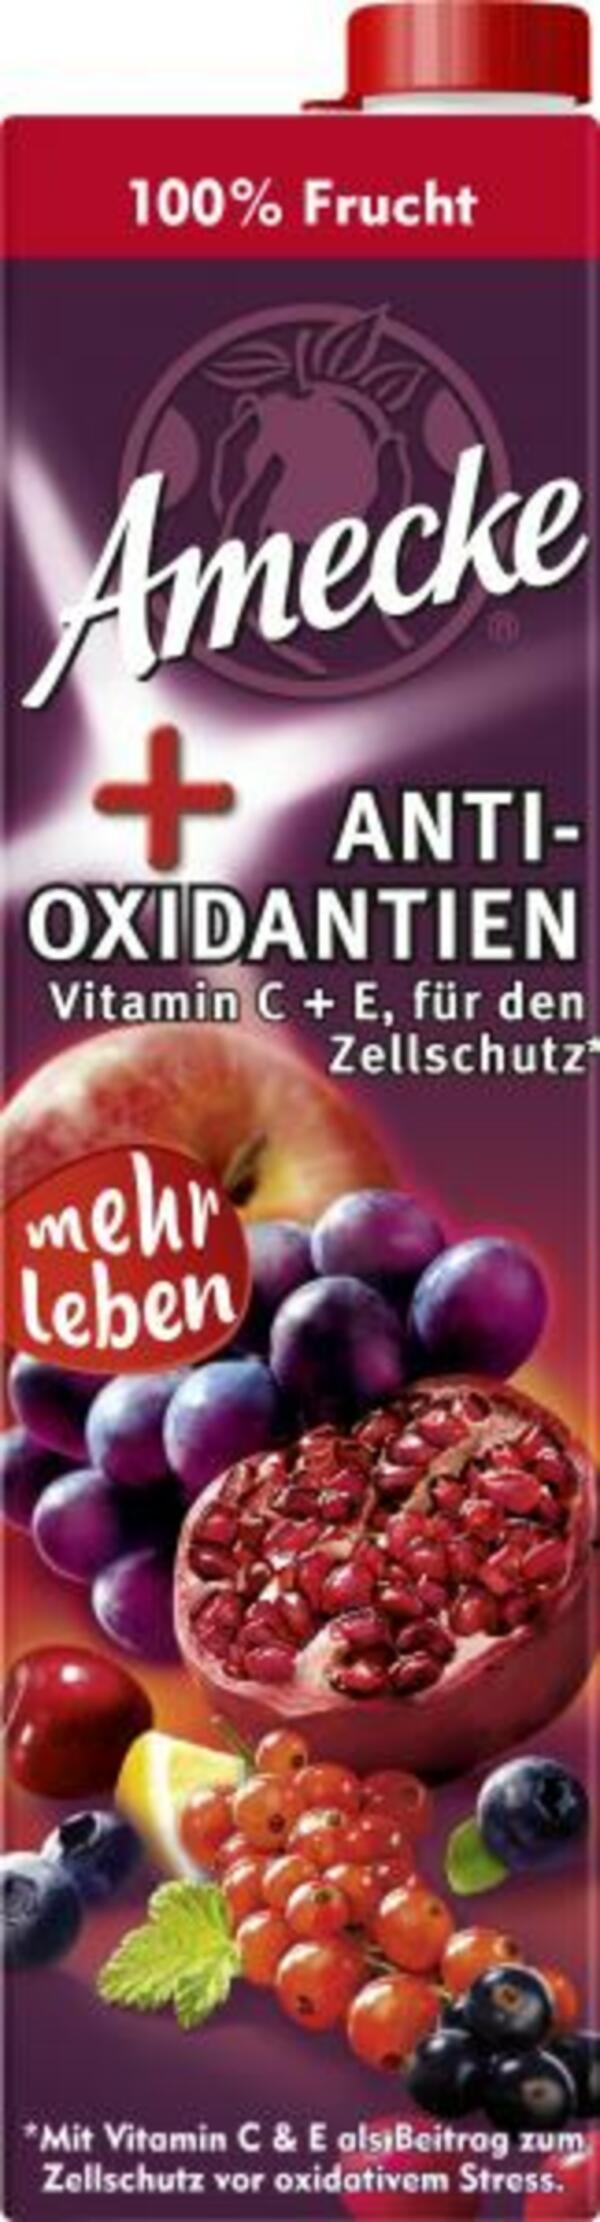 Bild 1 von Amecke + Antioxidantien